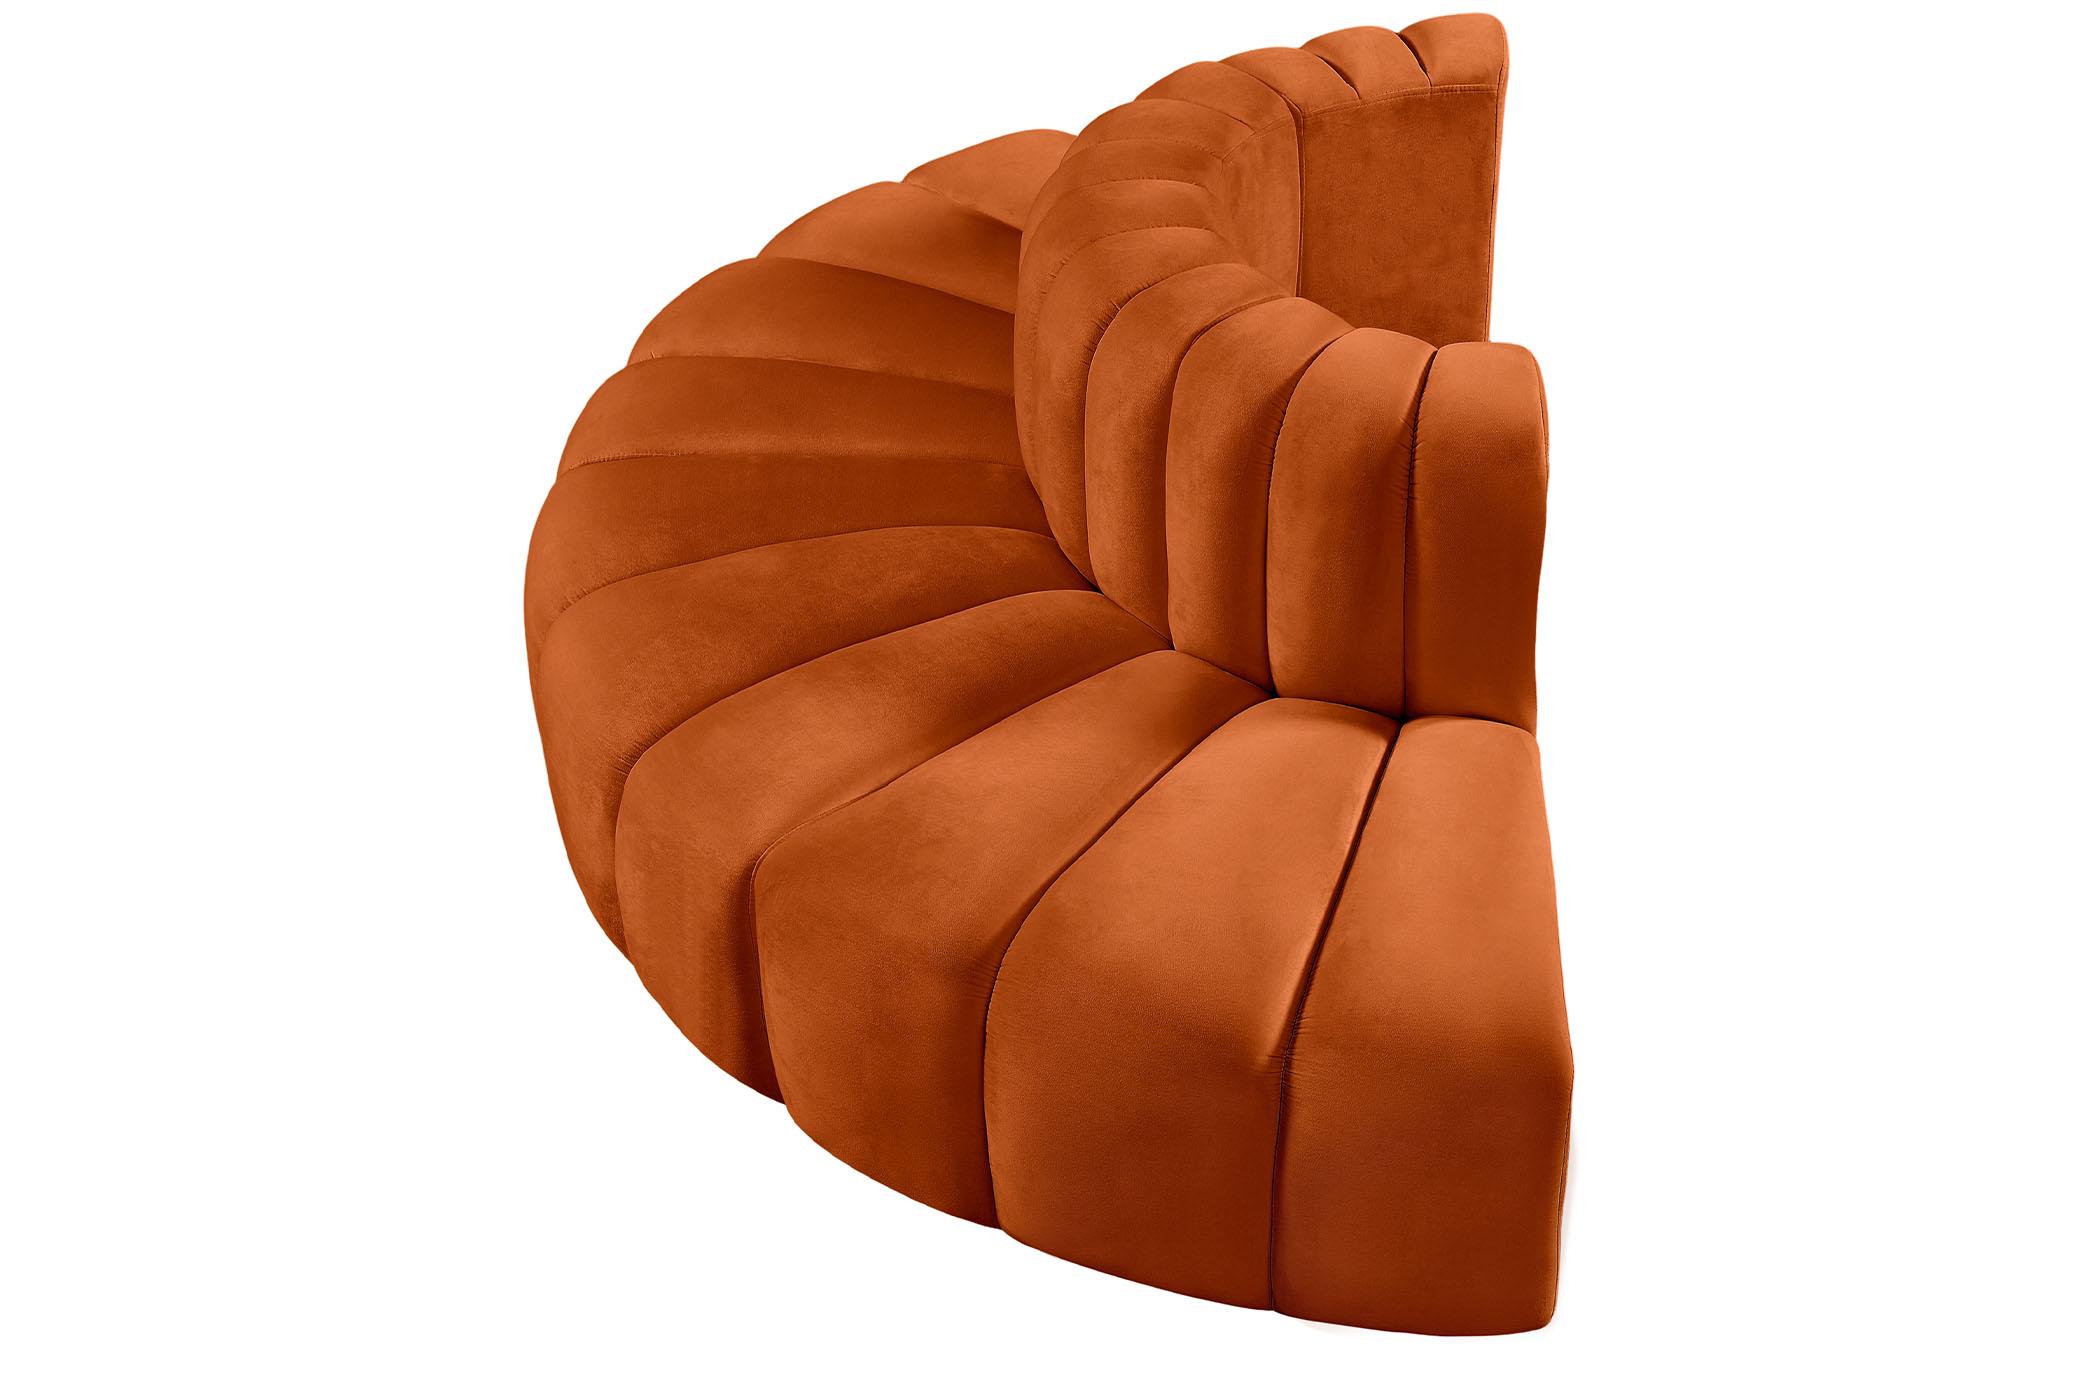 

    
103Cognac-S4G Meridian Furniture Modular Sectional Sofa
